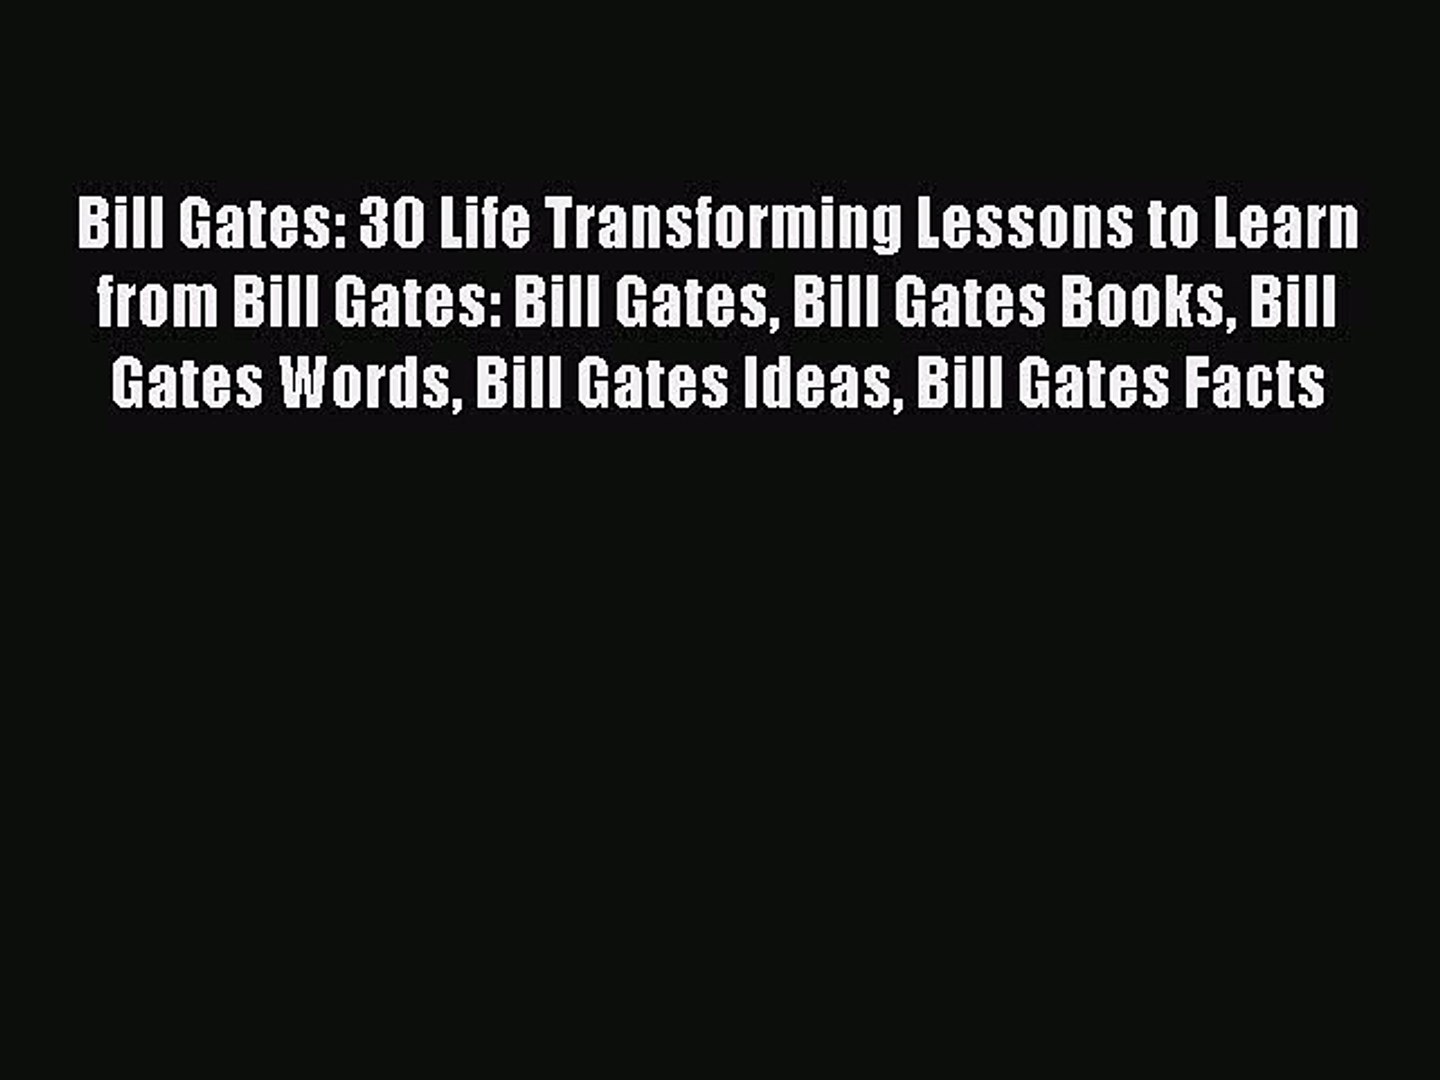 PDF Bill Gates: 30 Life Transforming Lessons to Learn from Bill Gates: Bill Gates Bill Gates